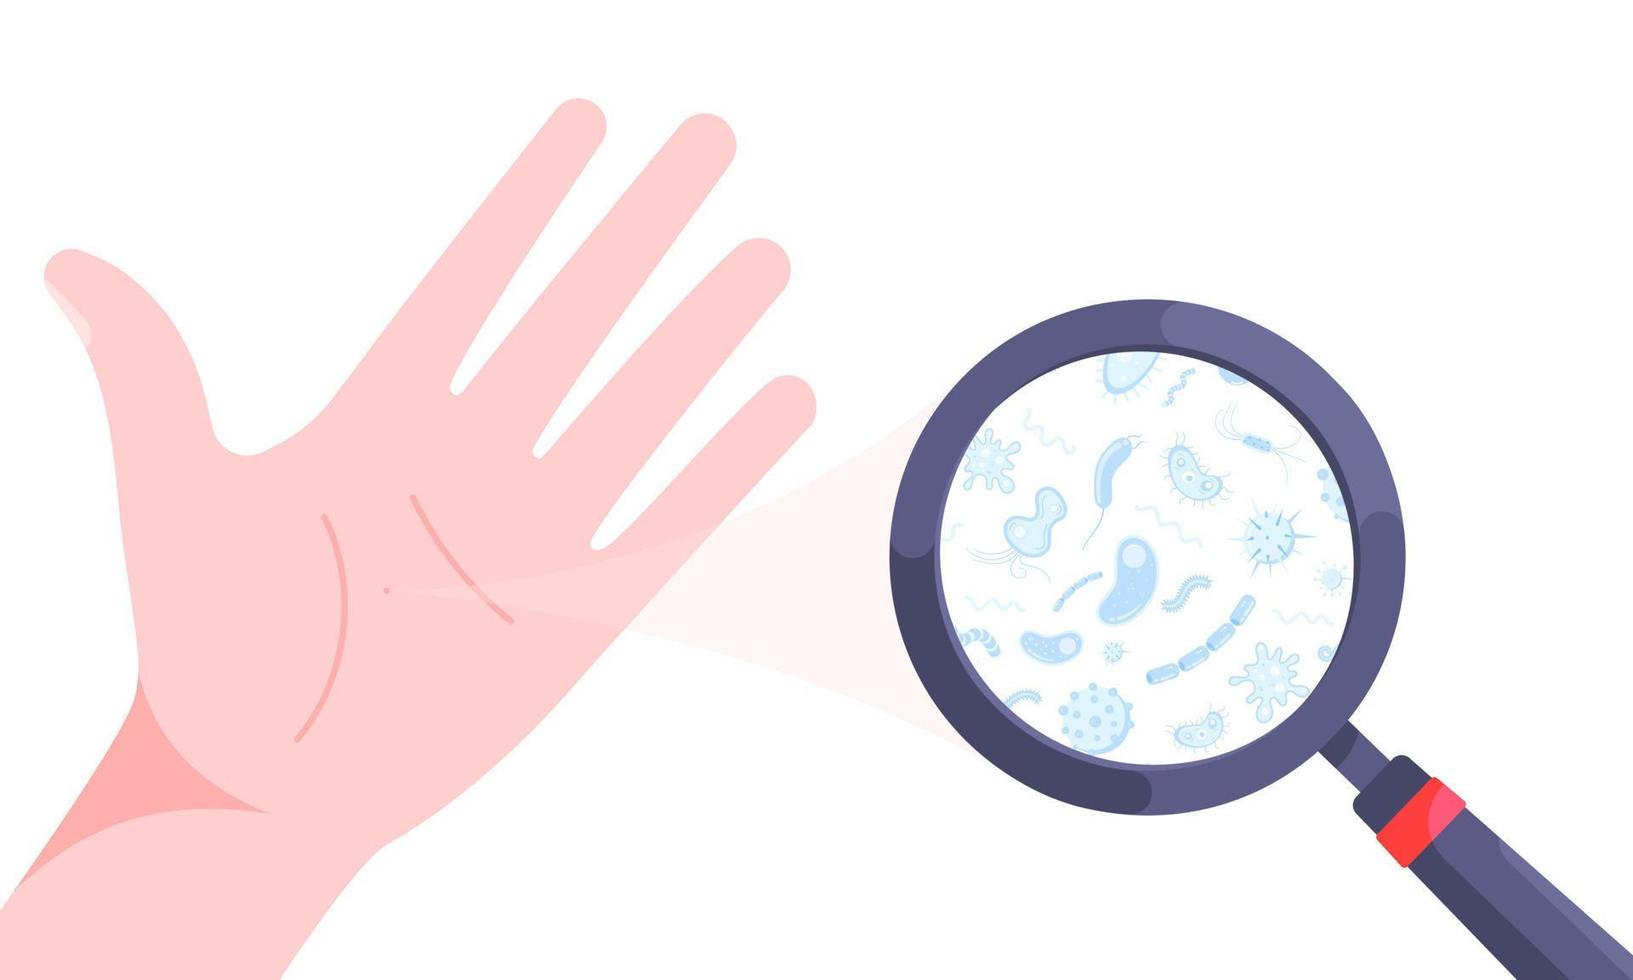 germes, bactéries et virus sur l'illustration vectorielle de la paume de la main sale isolée sur fond blanc. vecteur